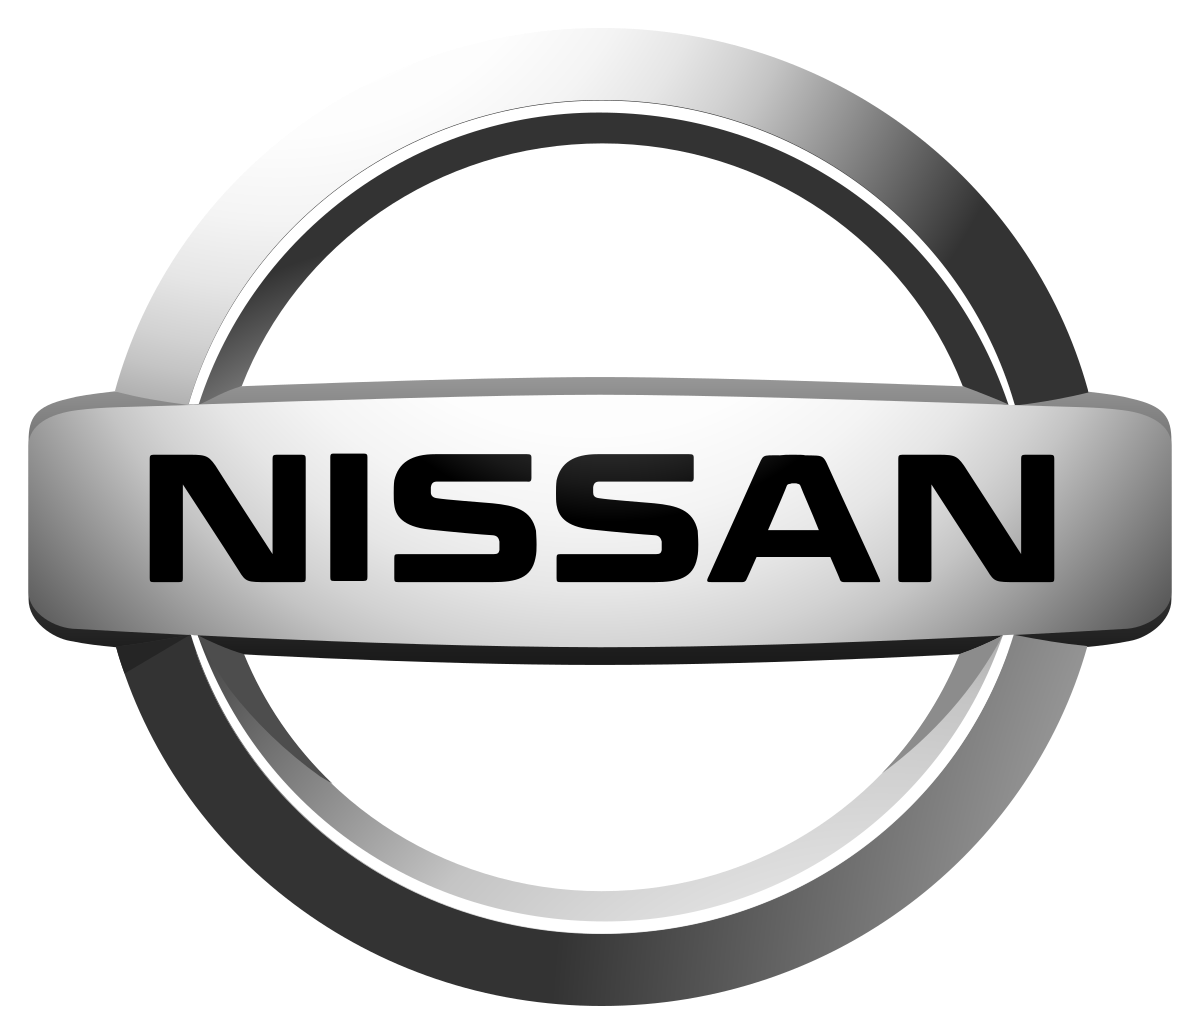 Nissan choisit la Thaïlande pour ses voitures électriques